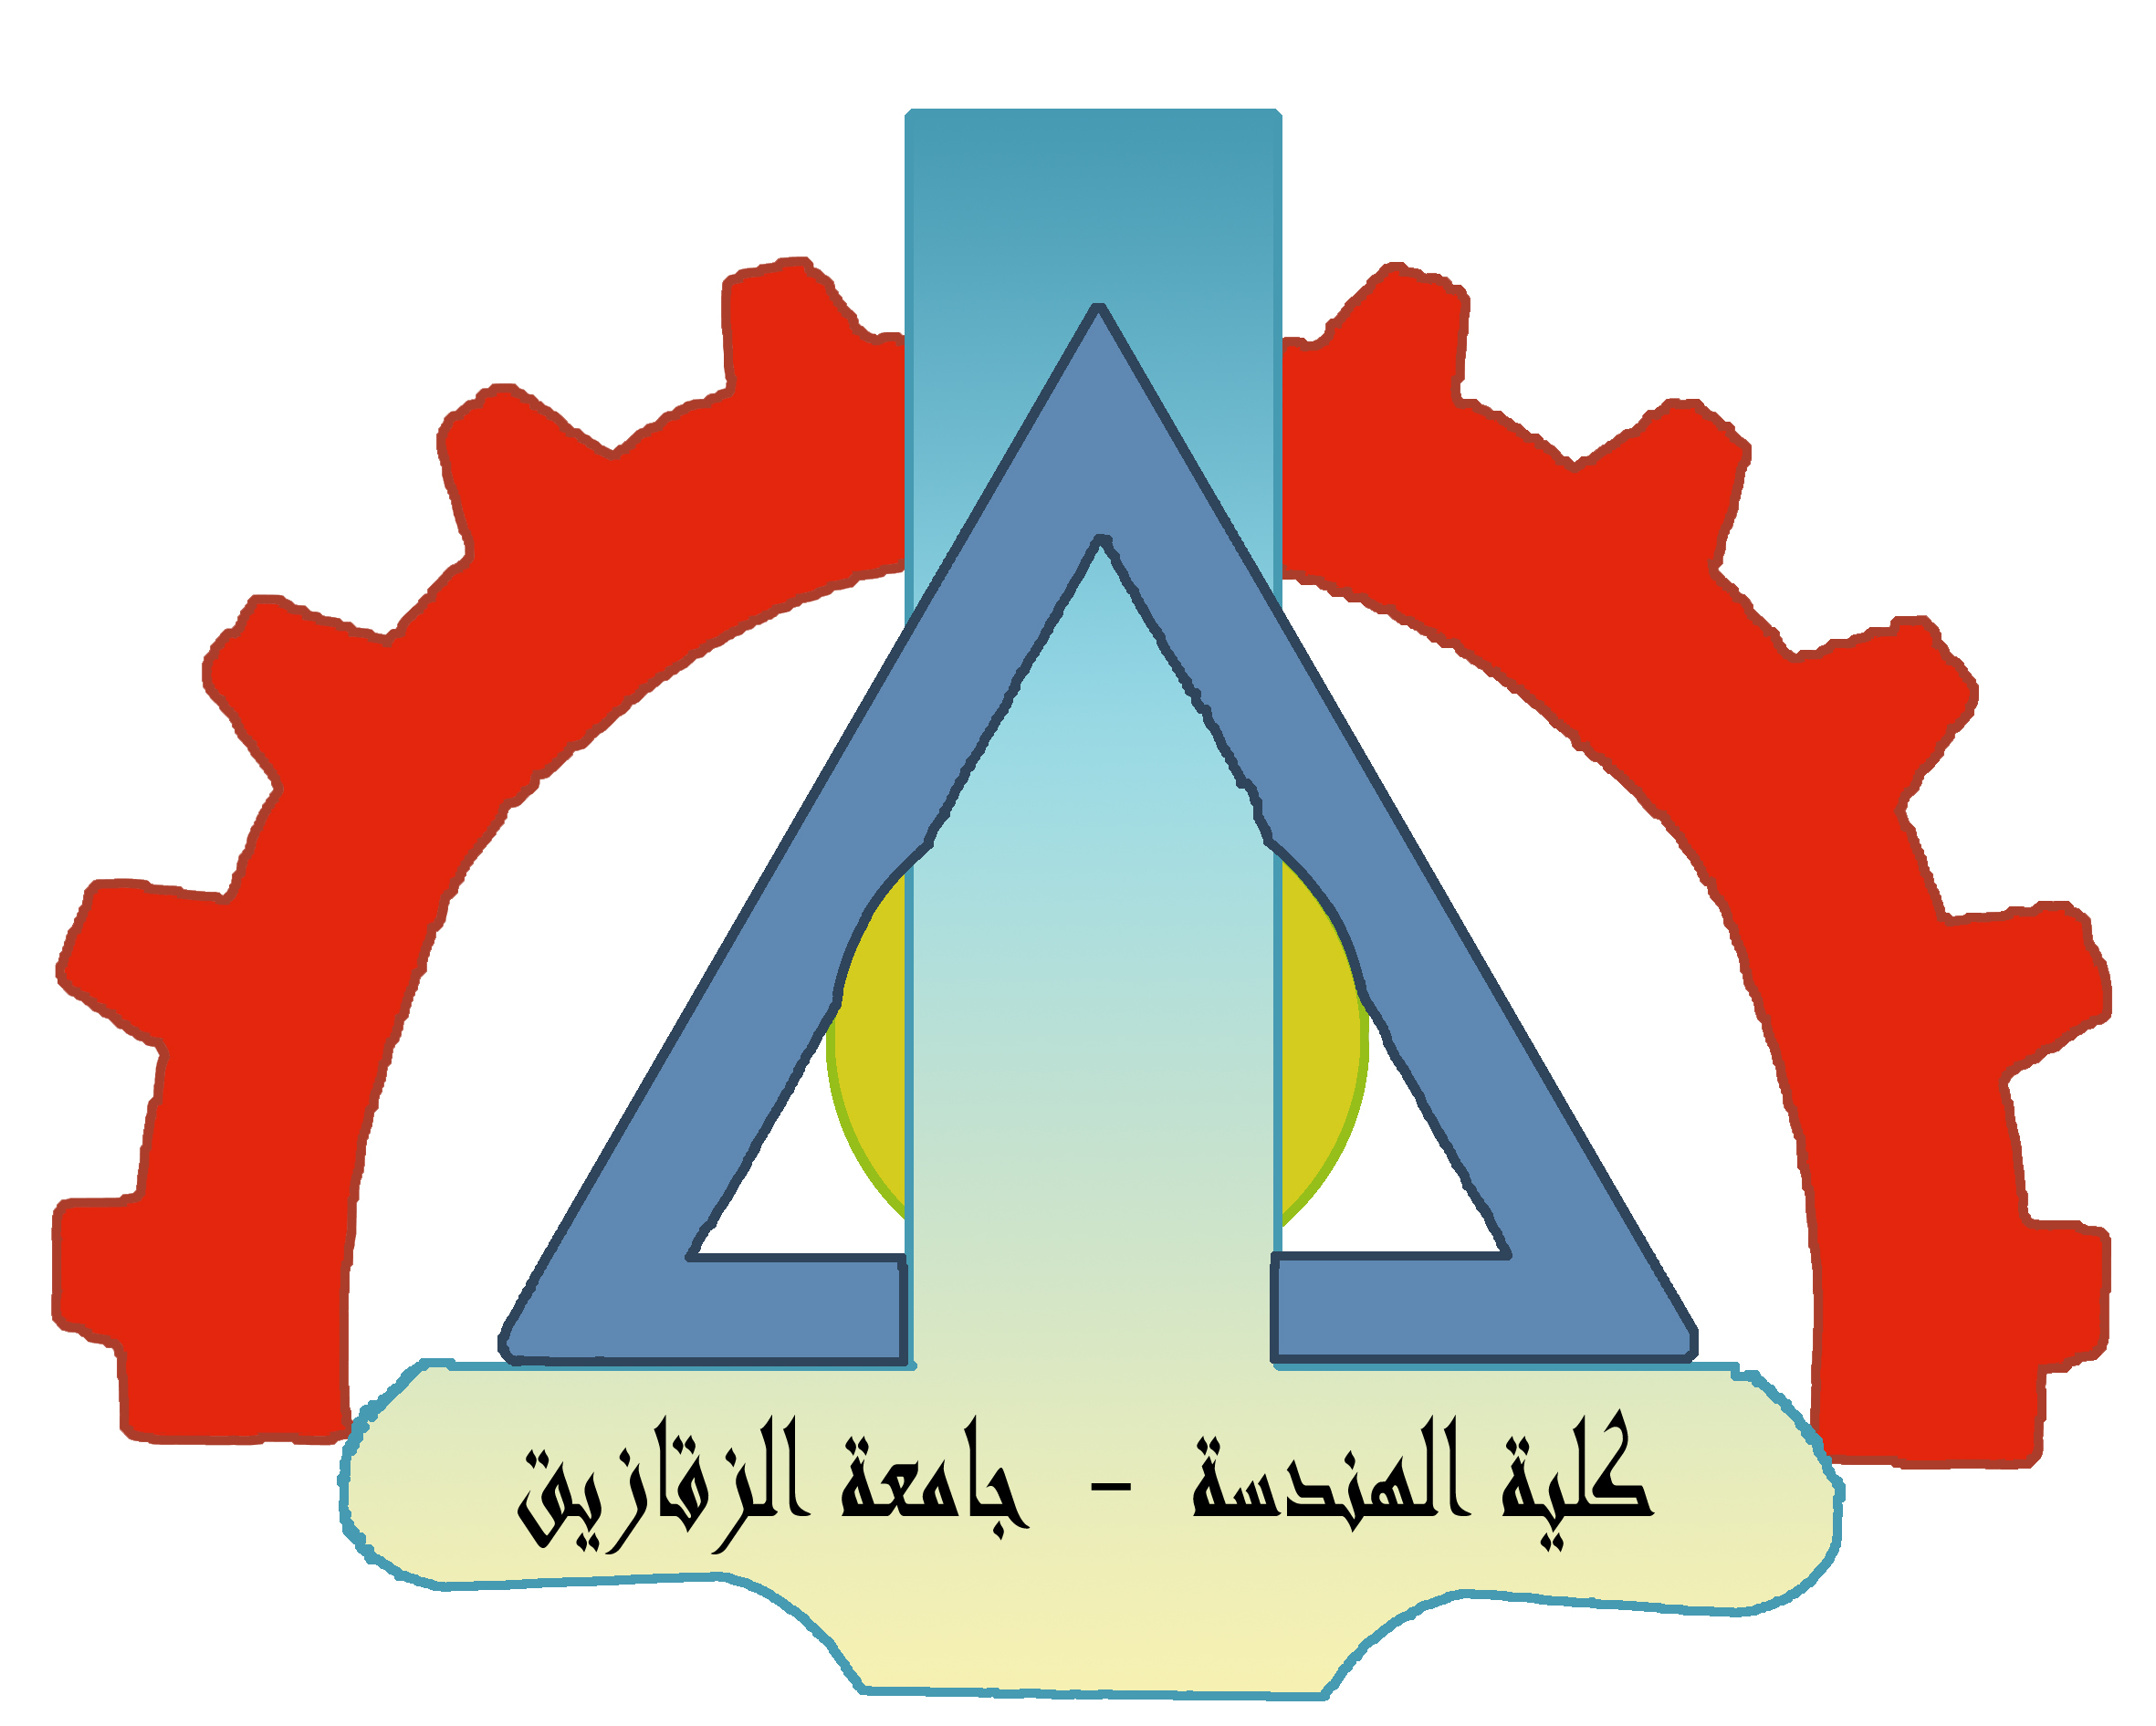 الجداول الدراسية للفصل الدراسى الثانى للعام الجامعى 2012 - 2013